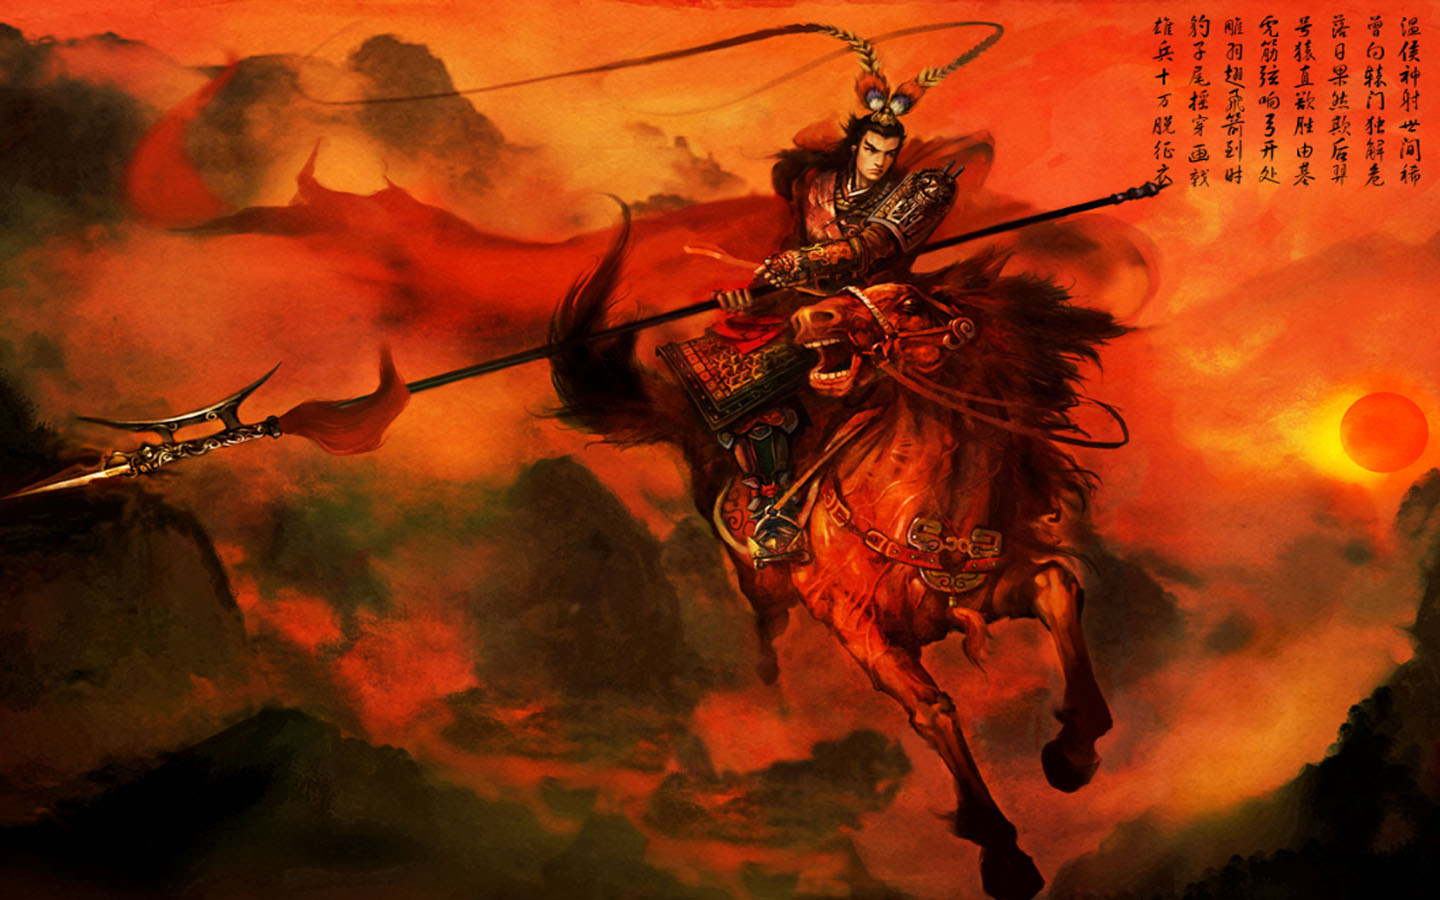 Lu Bu from Dynasty Warriors – Game Art | Game-Art-HQ